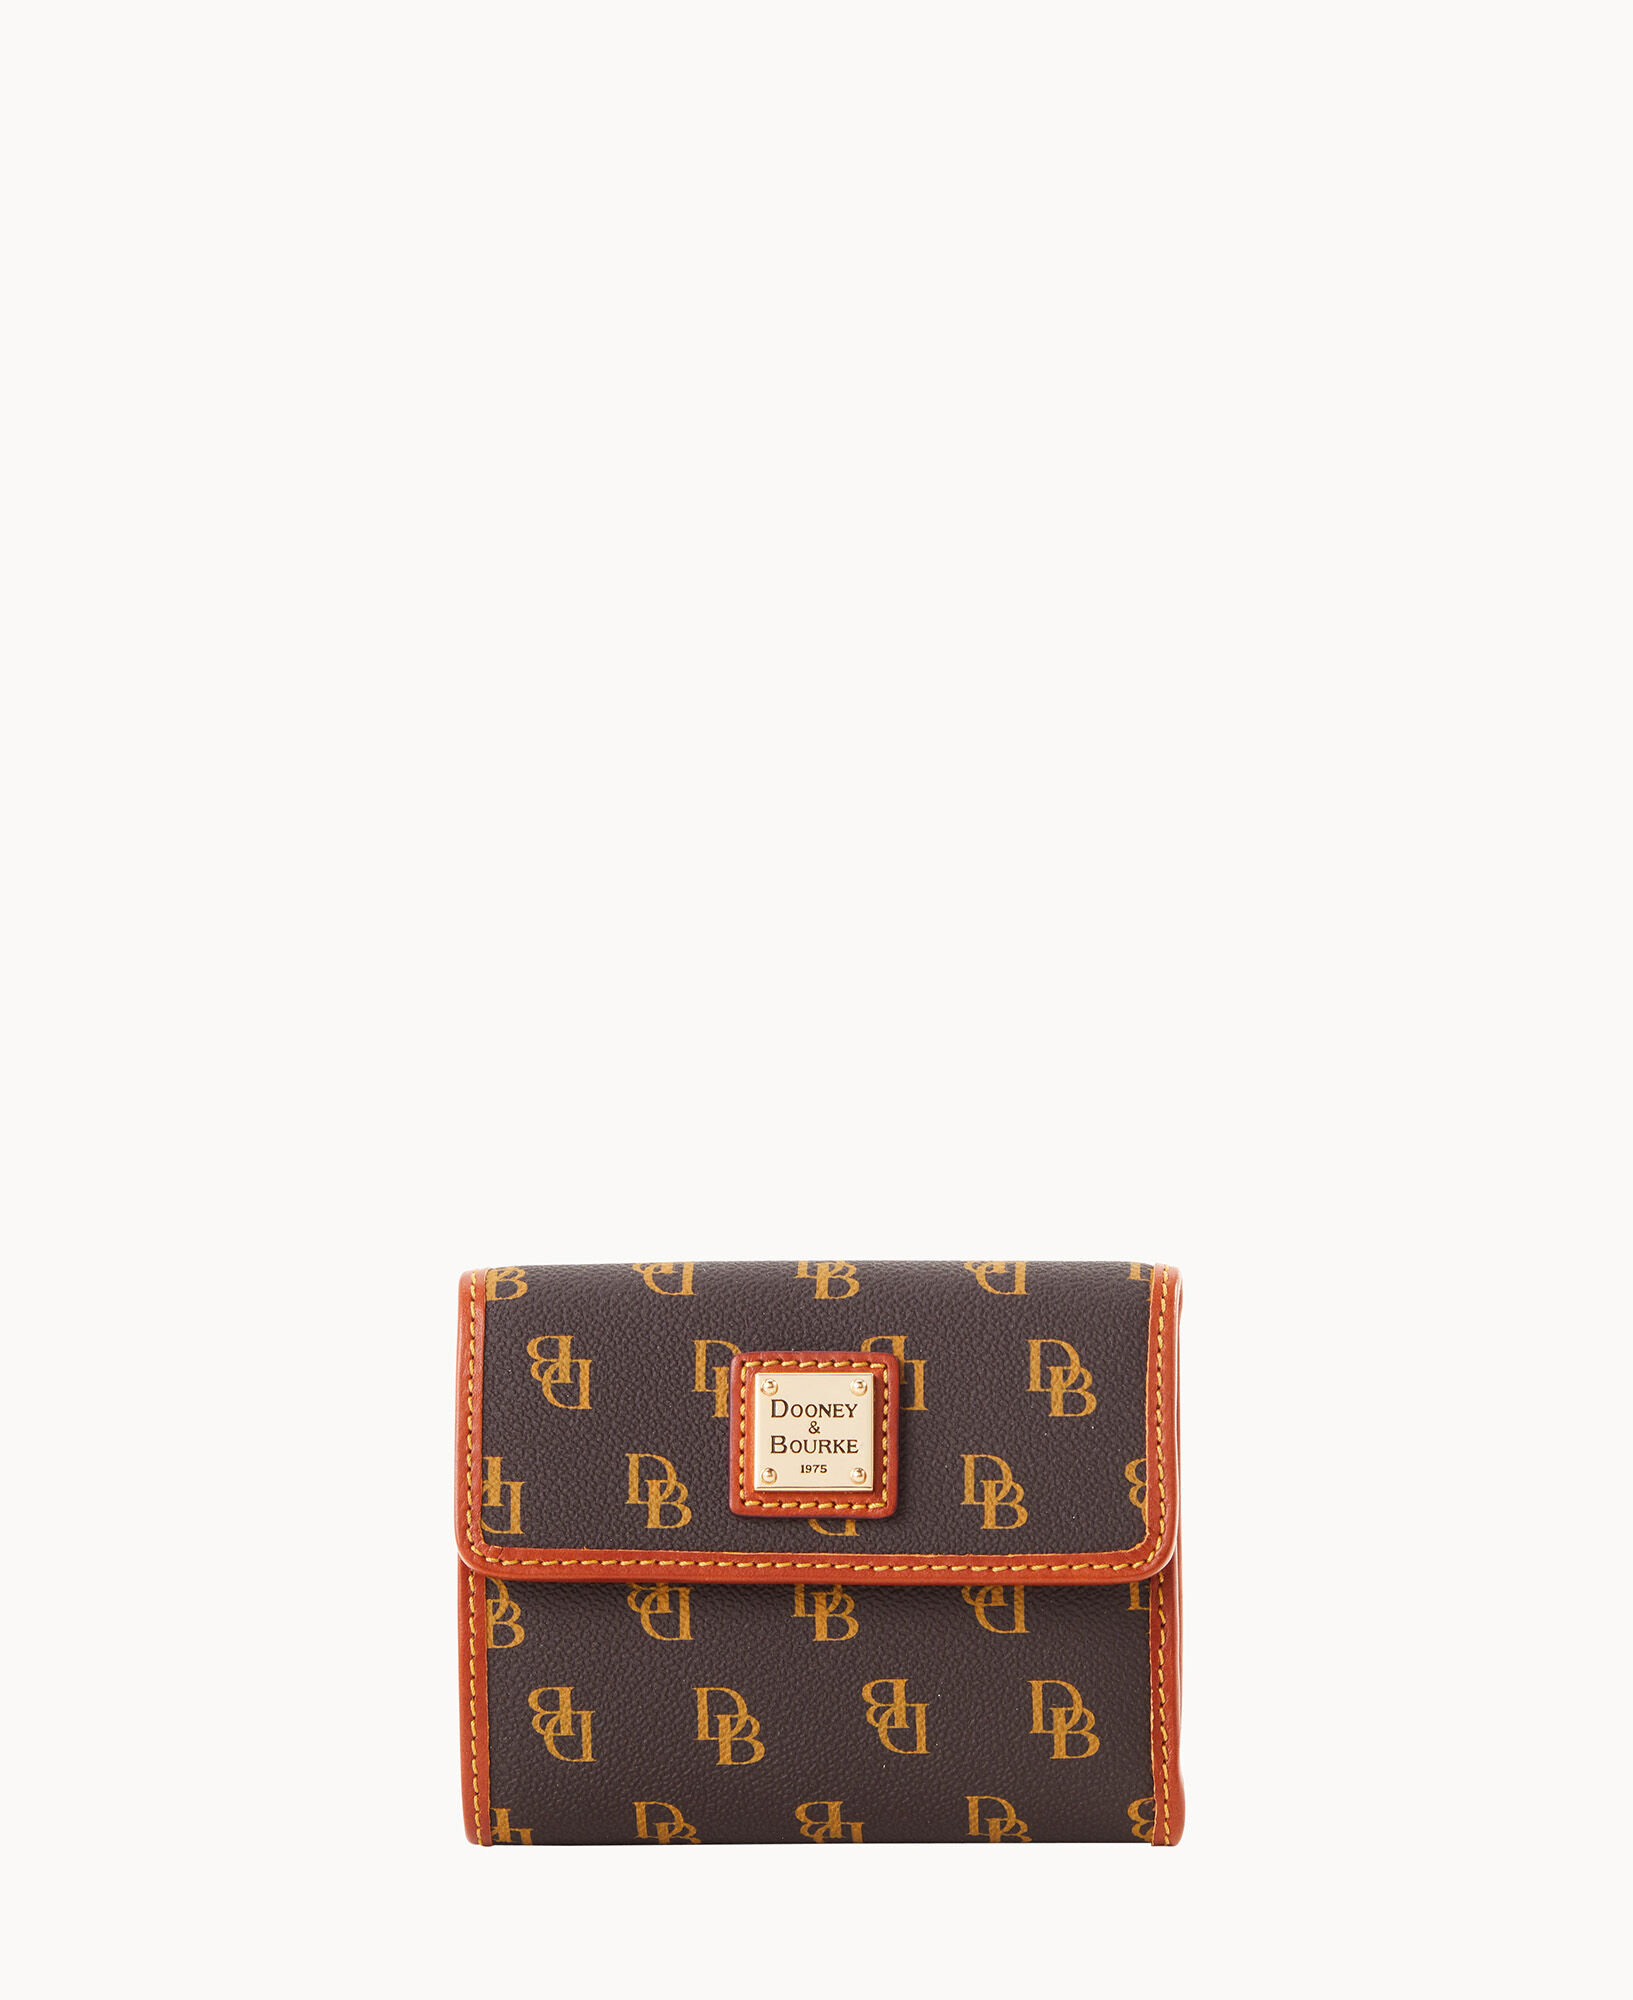 Louis Vuitton e Bag - $444 - From Lexie